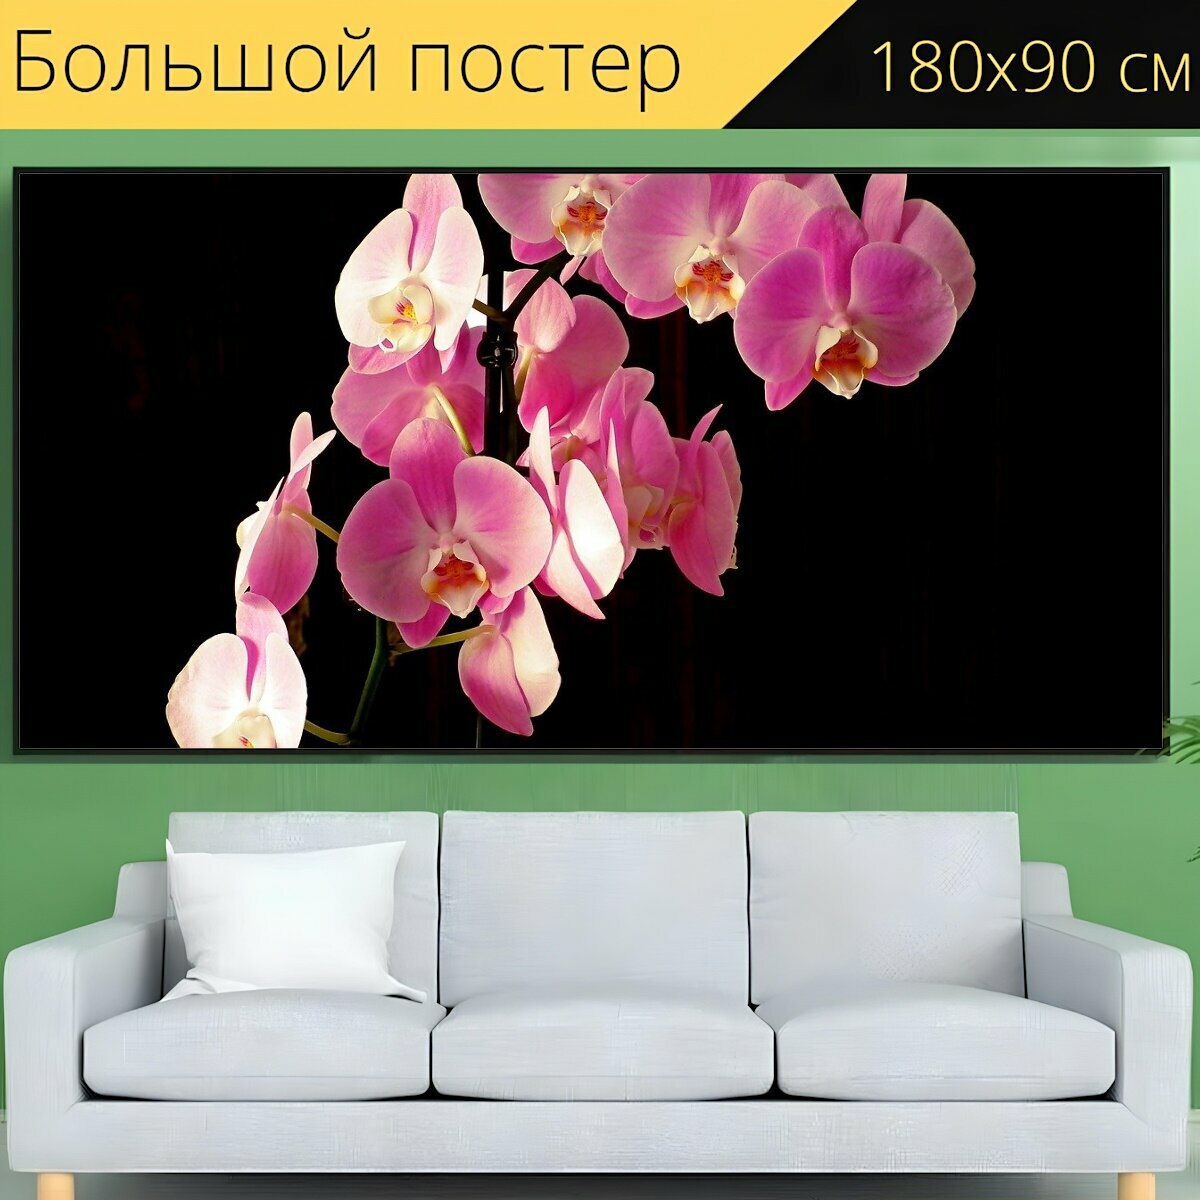 Большой постер "Орхидеи, цветы, розовый" 180 x 90 см. для интерьера